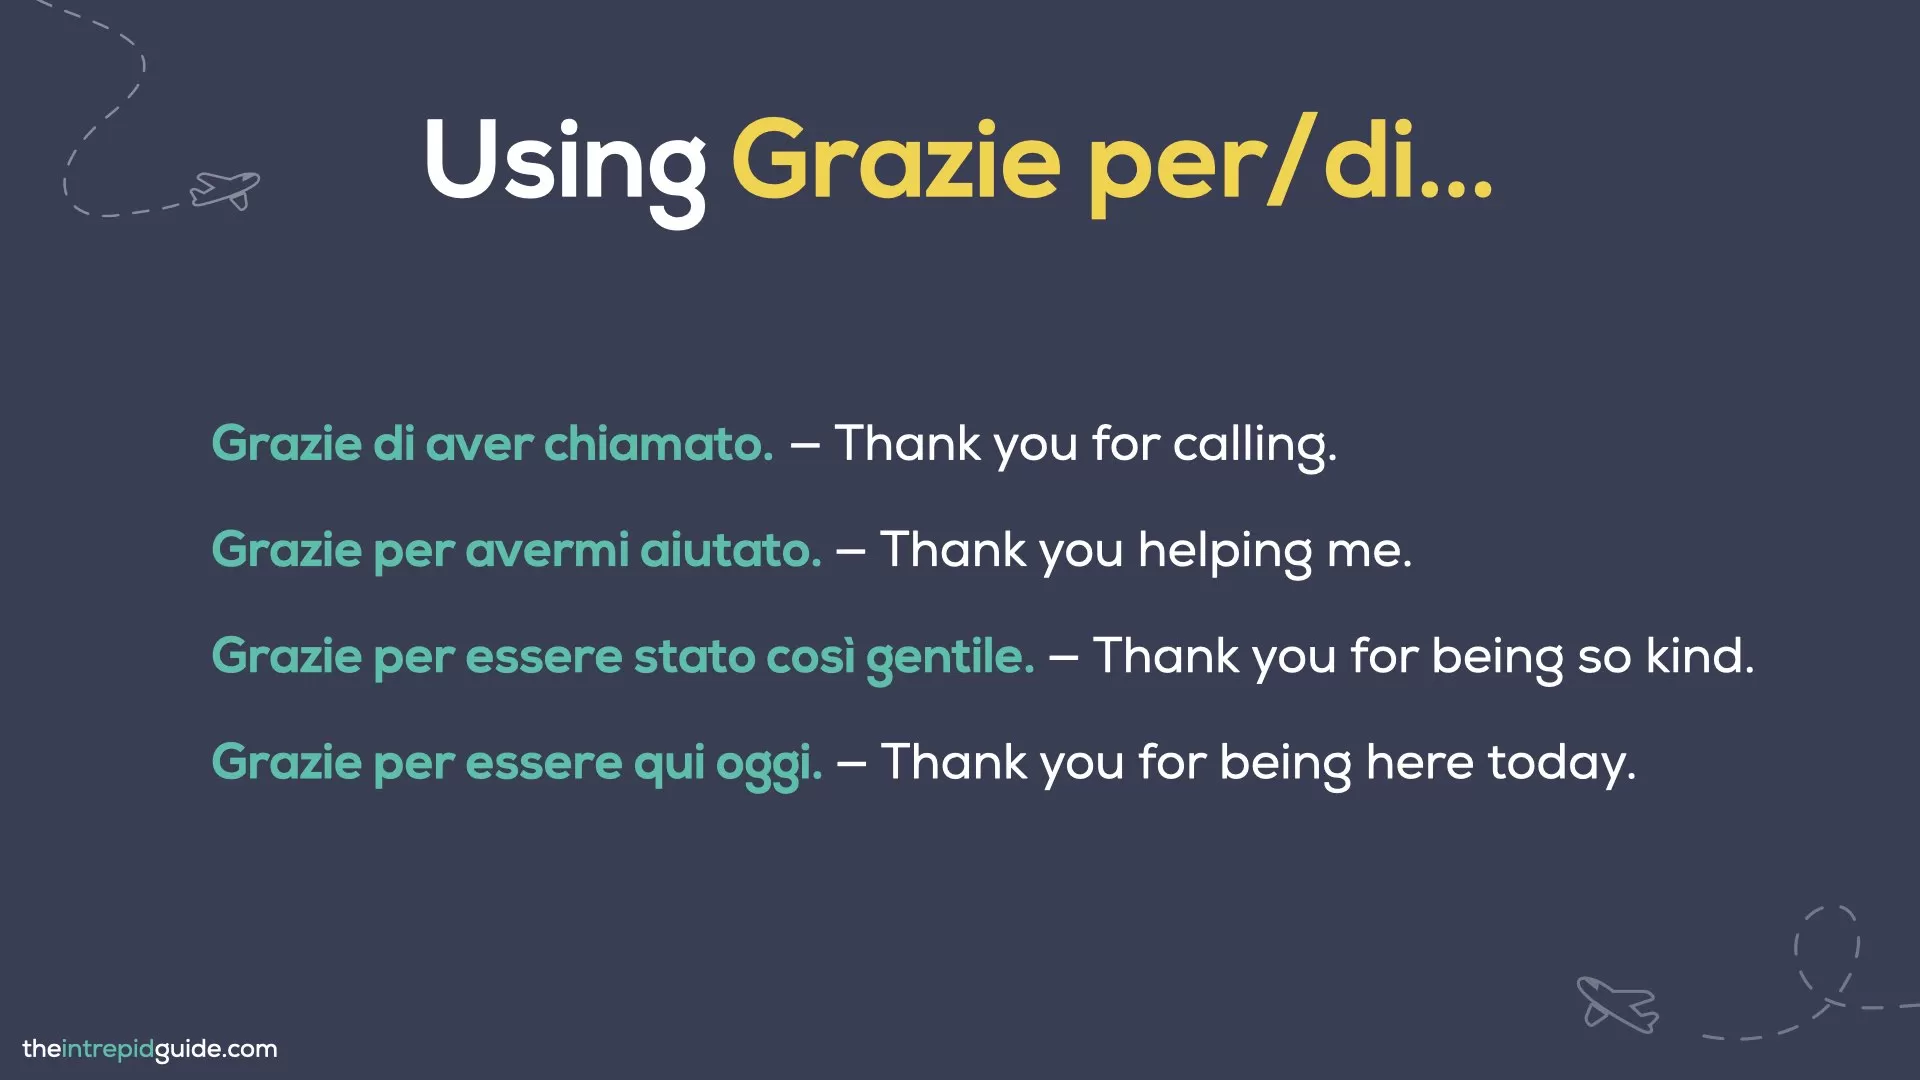 How to say thank you in Italian - Grazie di aver chiamato, grazie per avermi aiutato